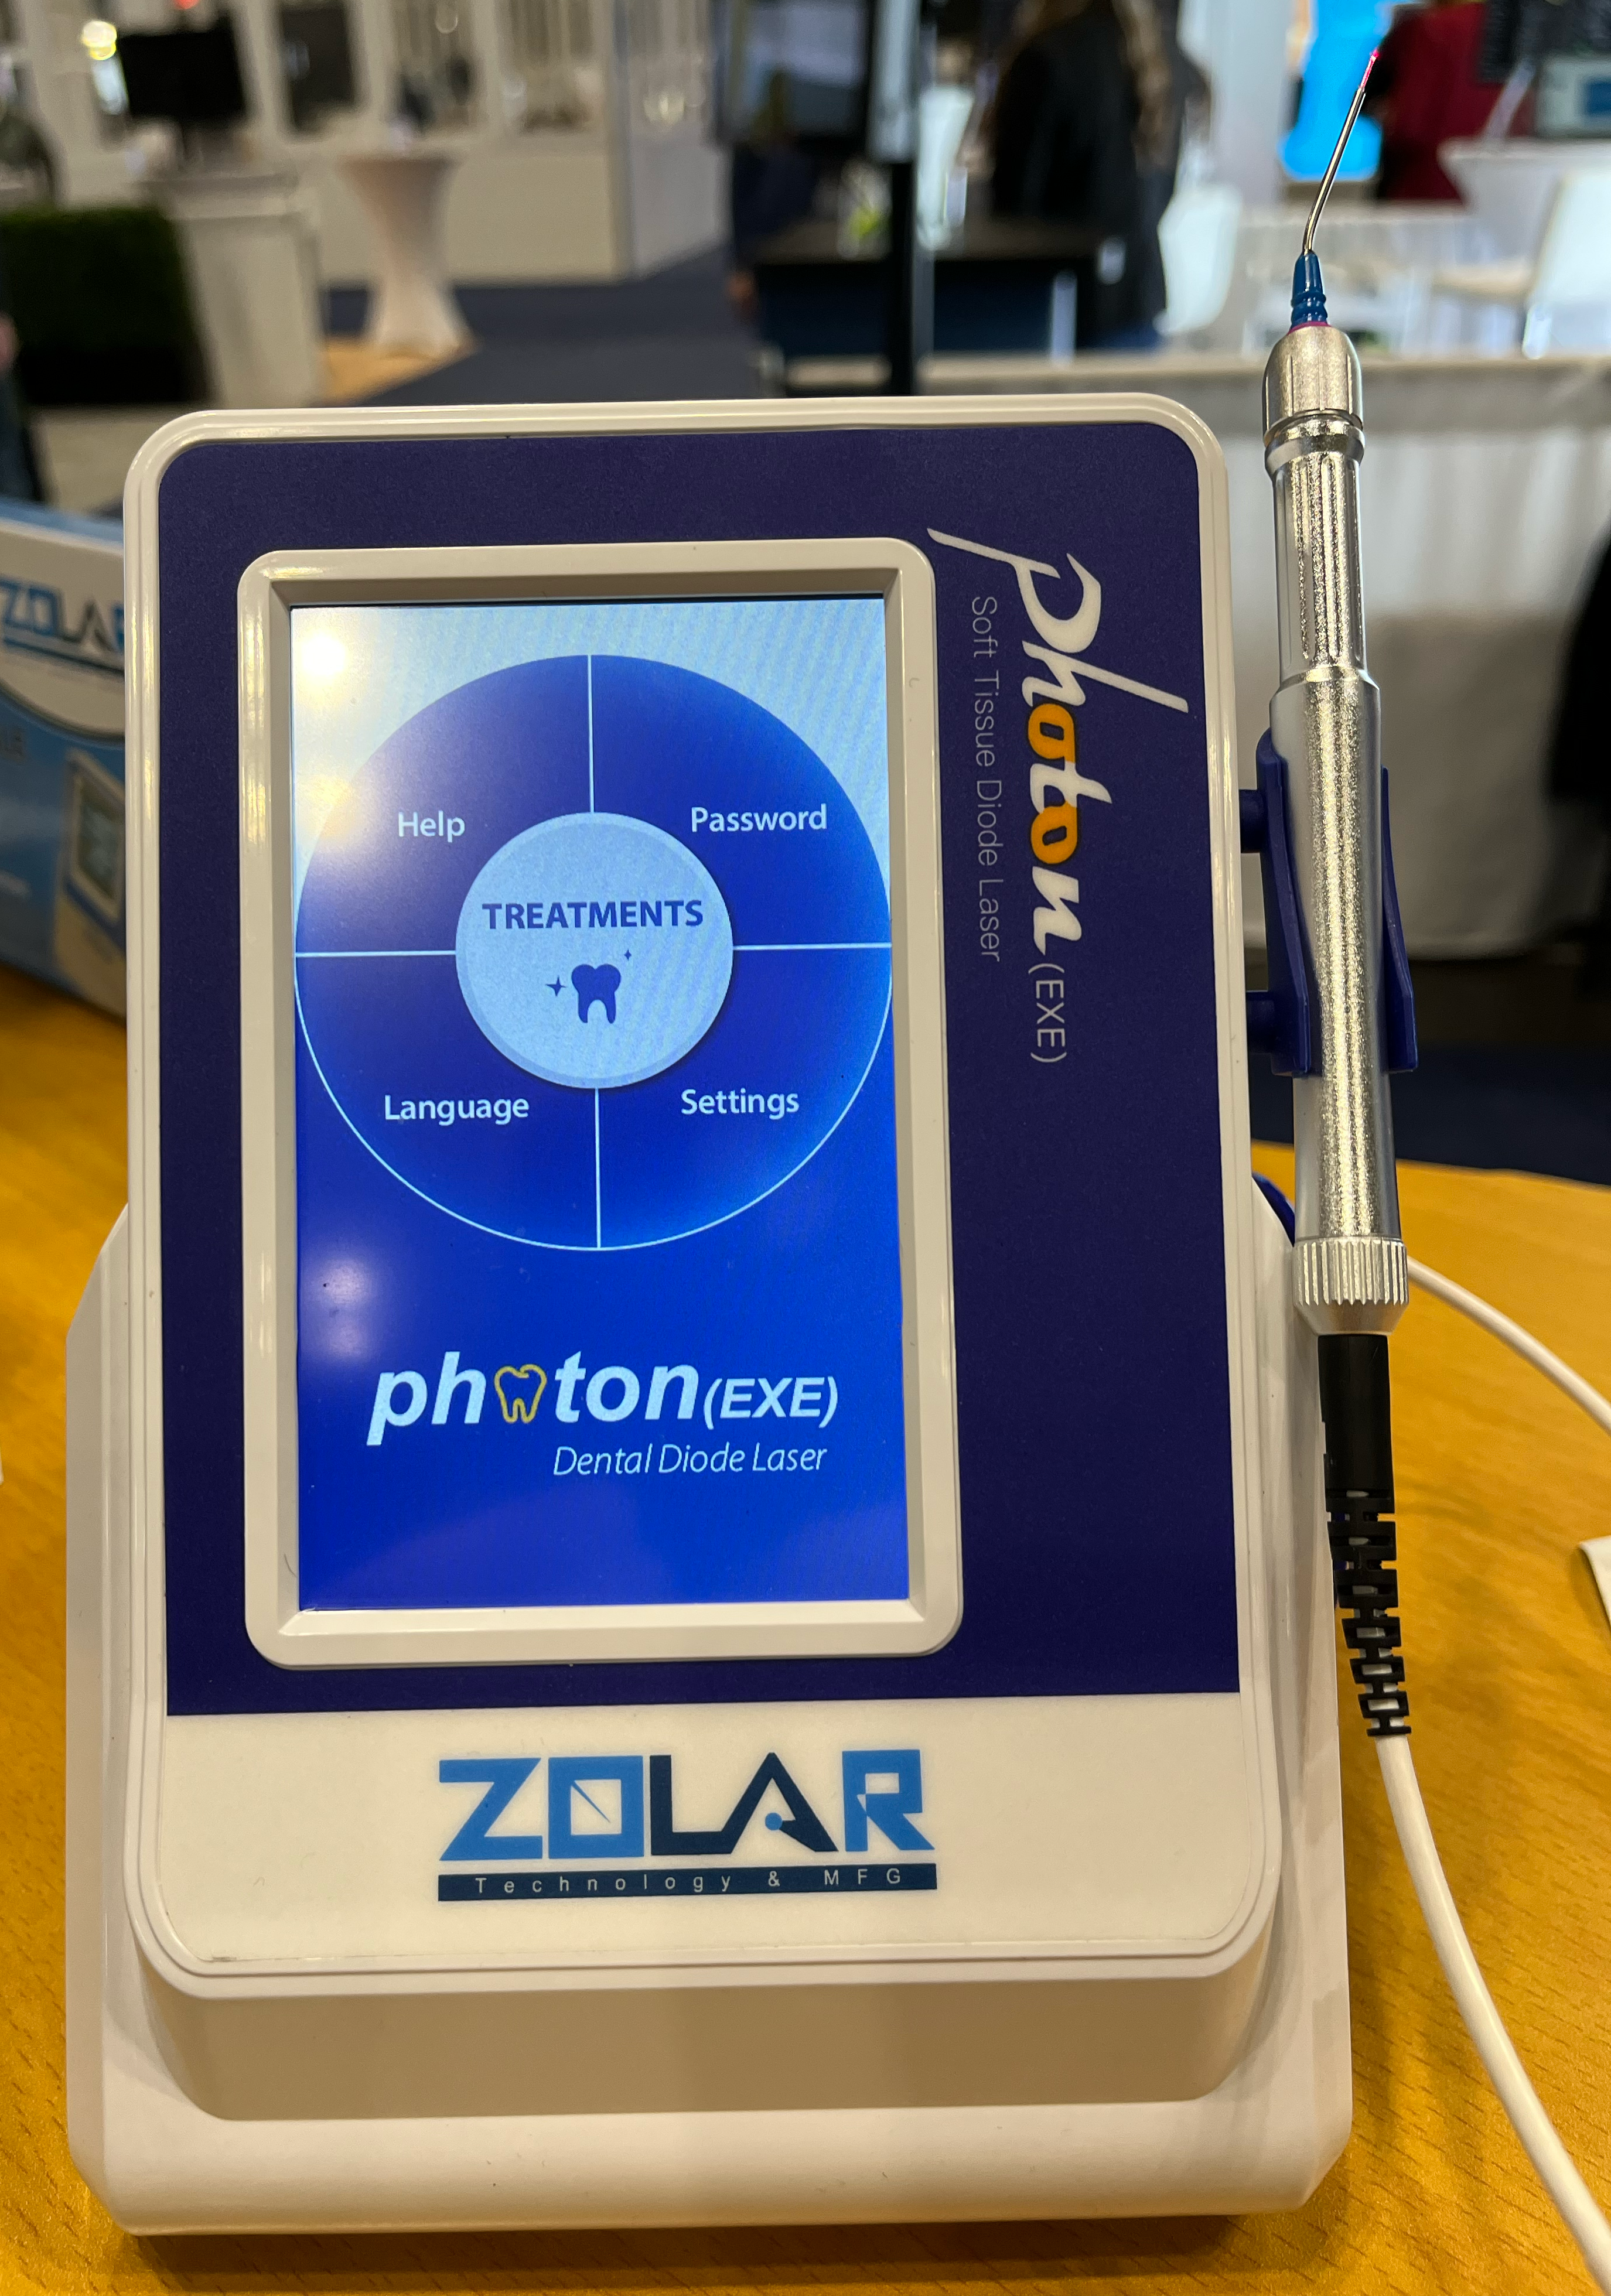 Zolar Technology's Photon EXE dental diode laser